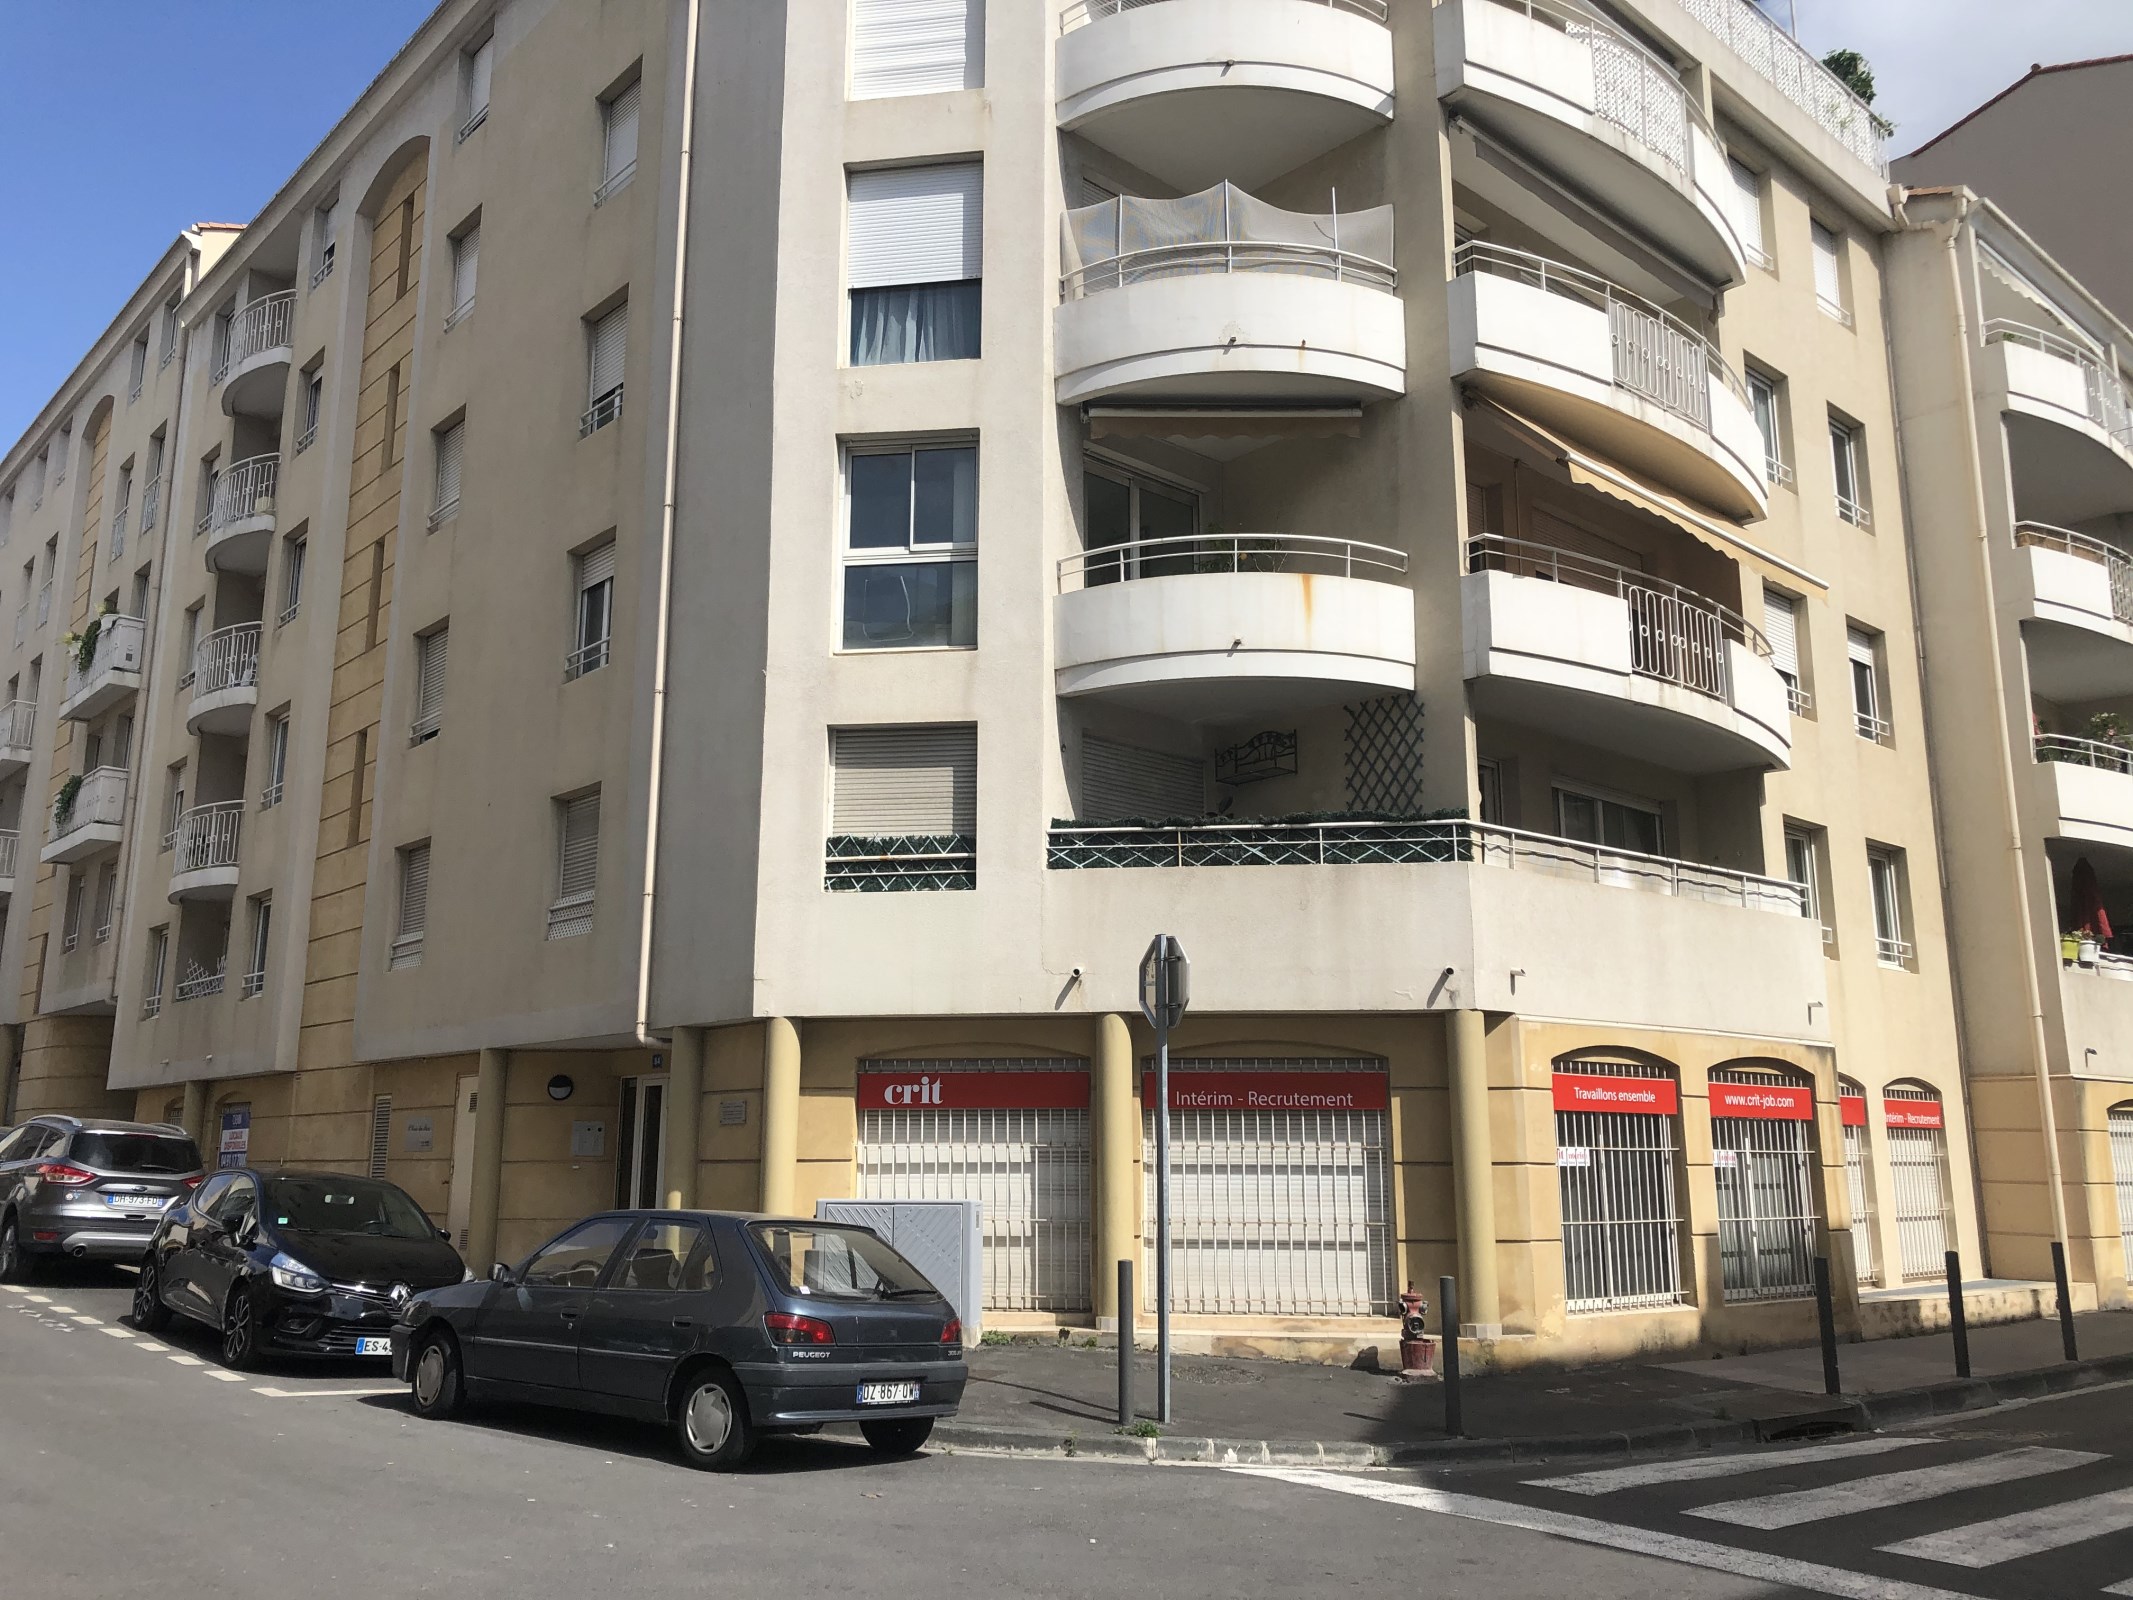 EXCLUSIVITE - Bureaux avec parkings à louer au calme avec vue jardin  - Prado/Périer - 13008 Marseille